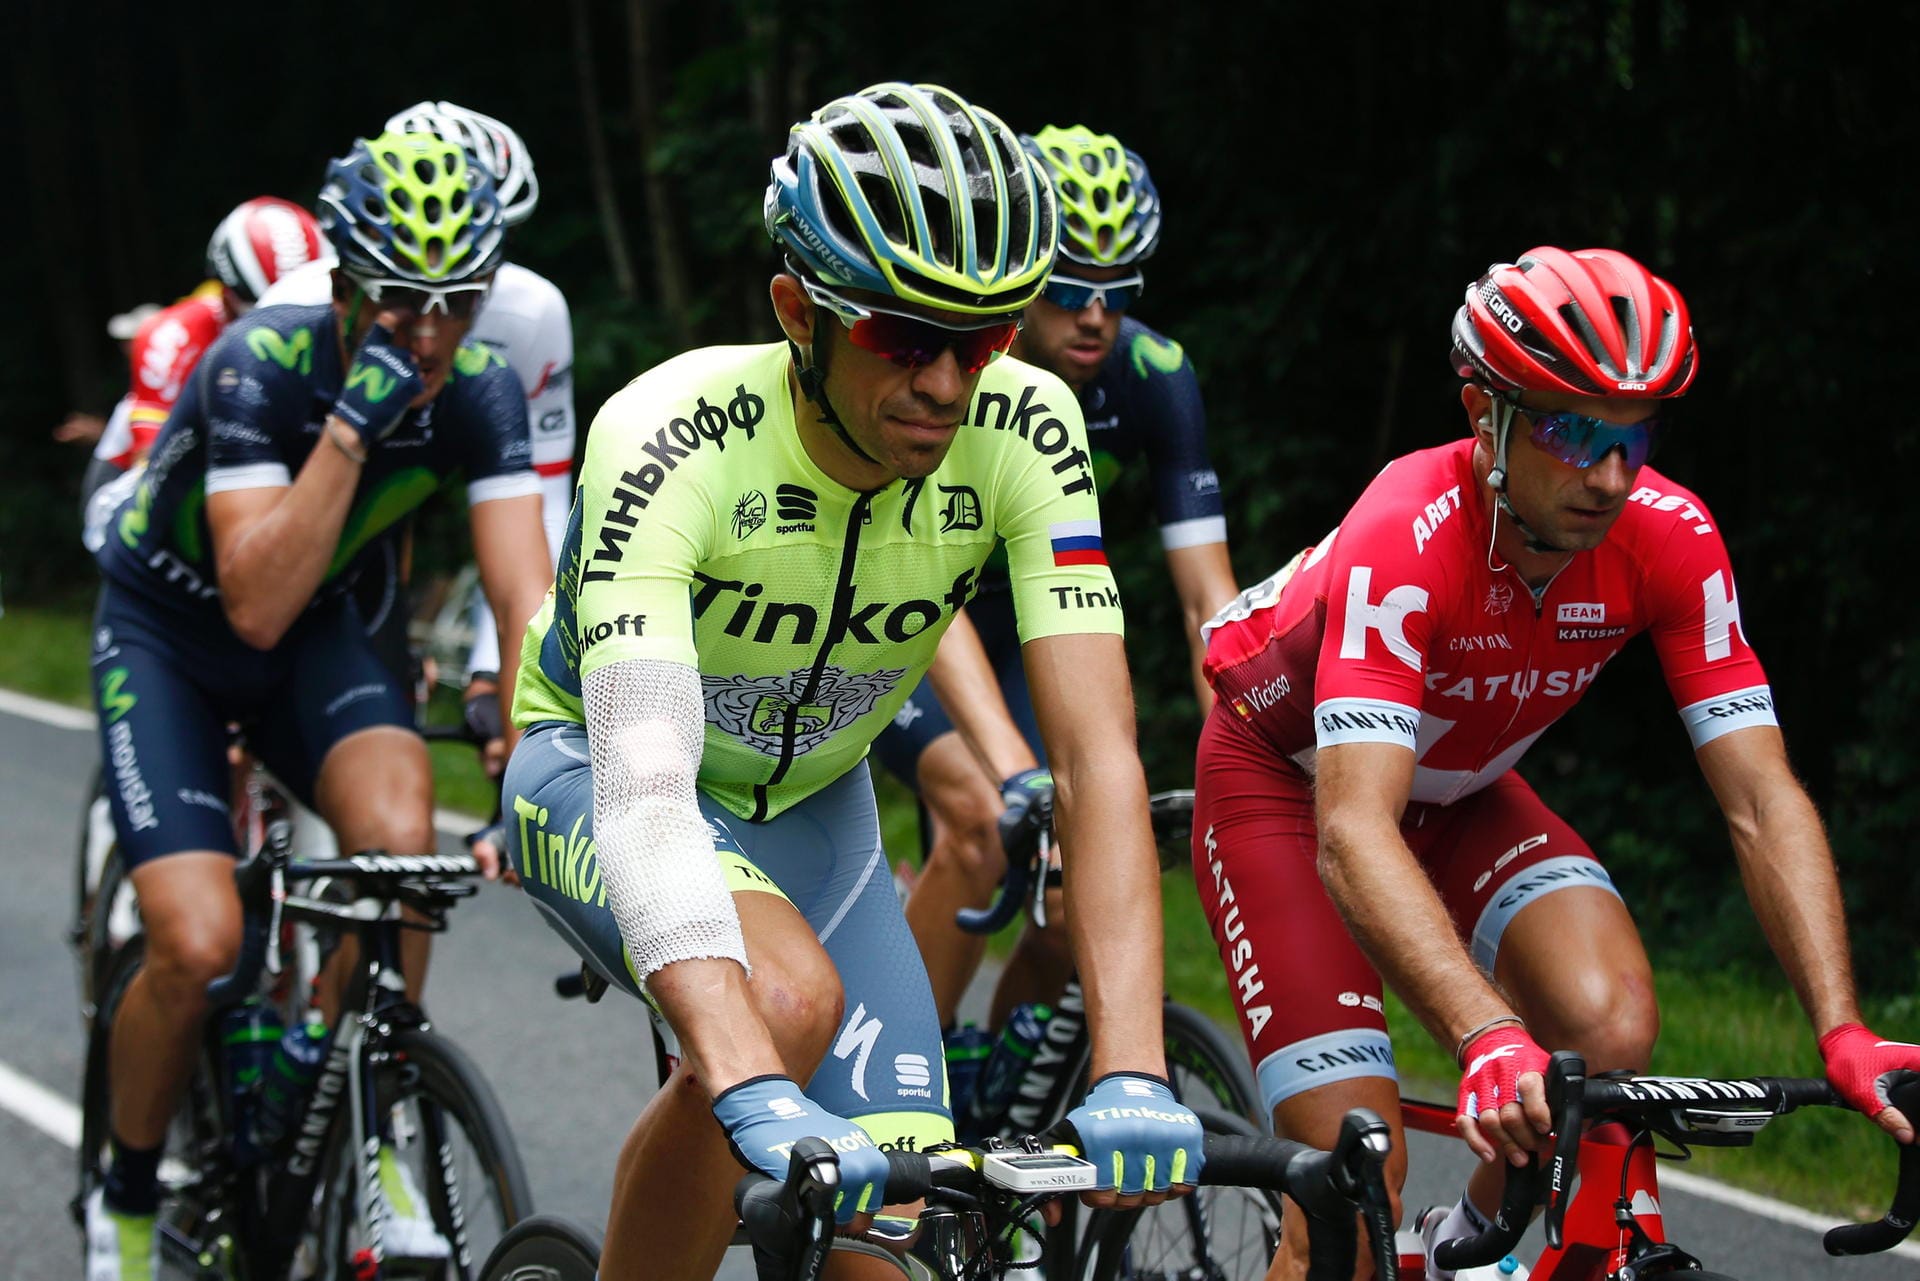 Gezeichnet: Alberto Contador, einer der Favoriten im Gesamtklassement, ist nach seinen Stürzen dick bandagiert ins Rennen gegangen. Trotz der 223,5 Kilometer langen Fahrt hoffte der Spanier auf ein bisschen Erholung.